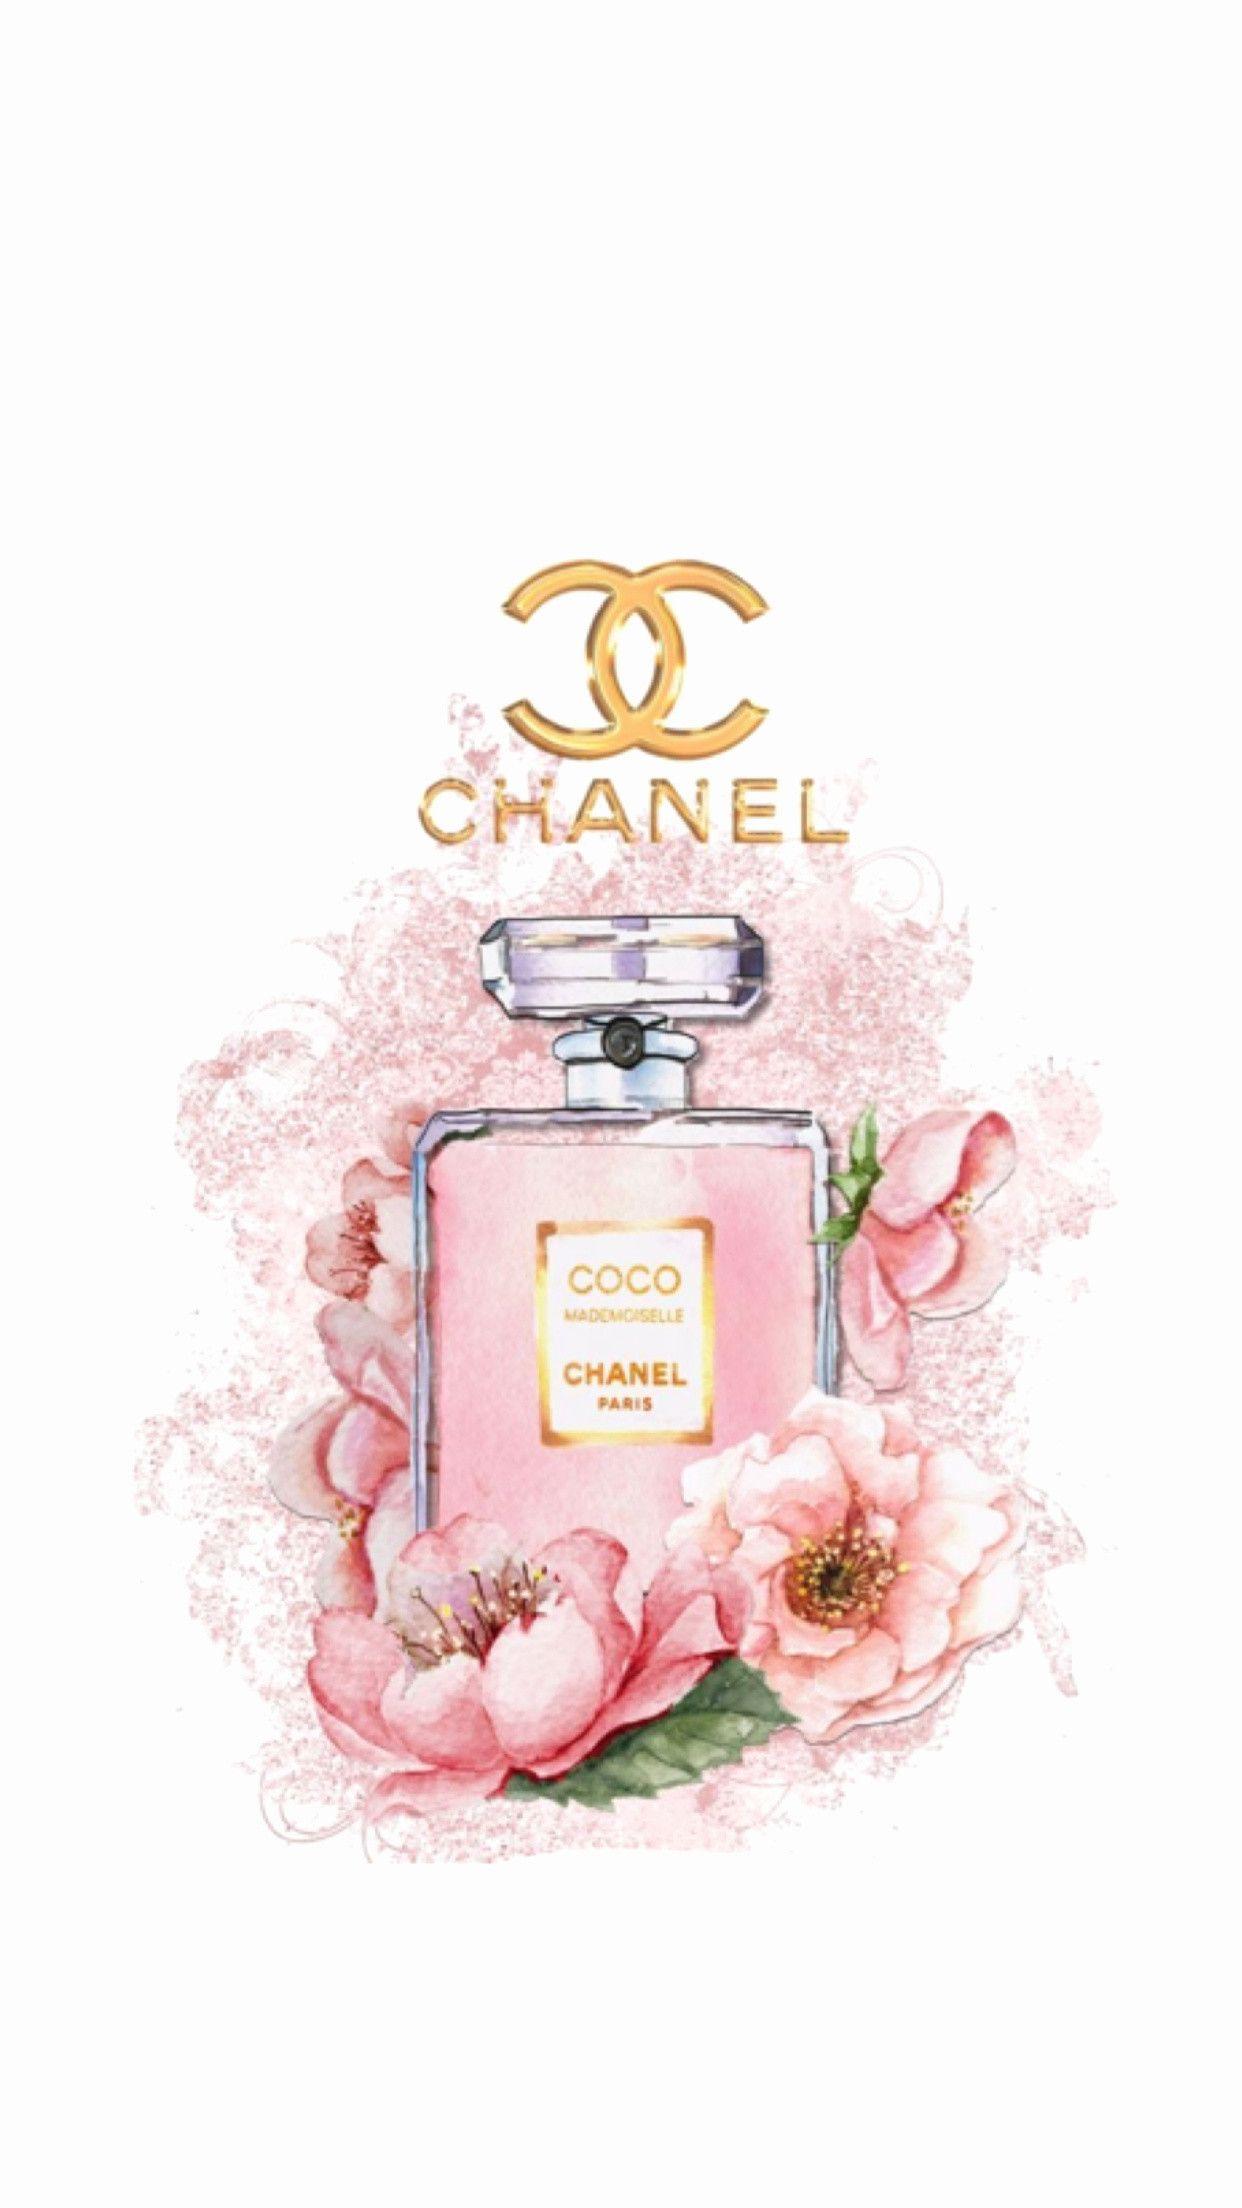 Với Coco Chanel iPhone Wallpapers, bạn sẽ cảm nhận được sự cuốn hút và tinh tế của những bộ sưu tập thời trang hàng đầu thế giới. Tìm kiếm ngay để chọn một hình nền phù hợp với phong cách của bạn và khiến các thiết bị của bạn trở nên lôi cuốn hơn!